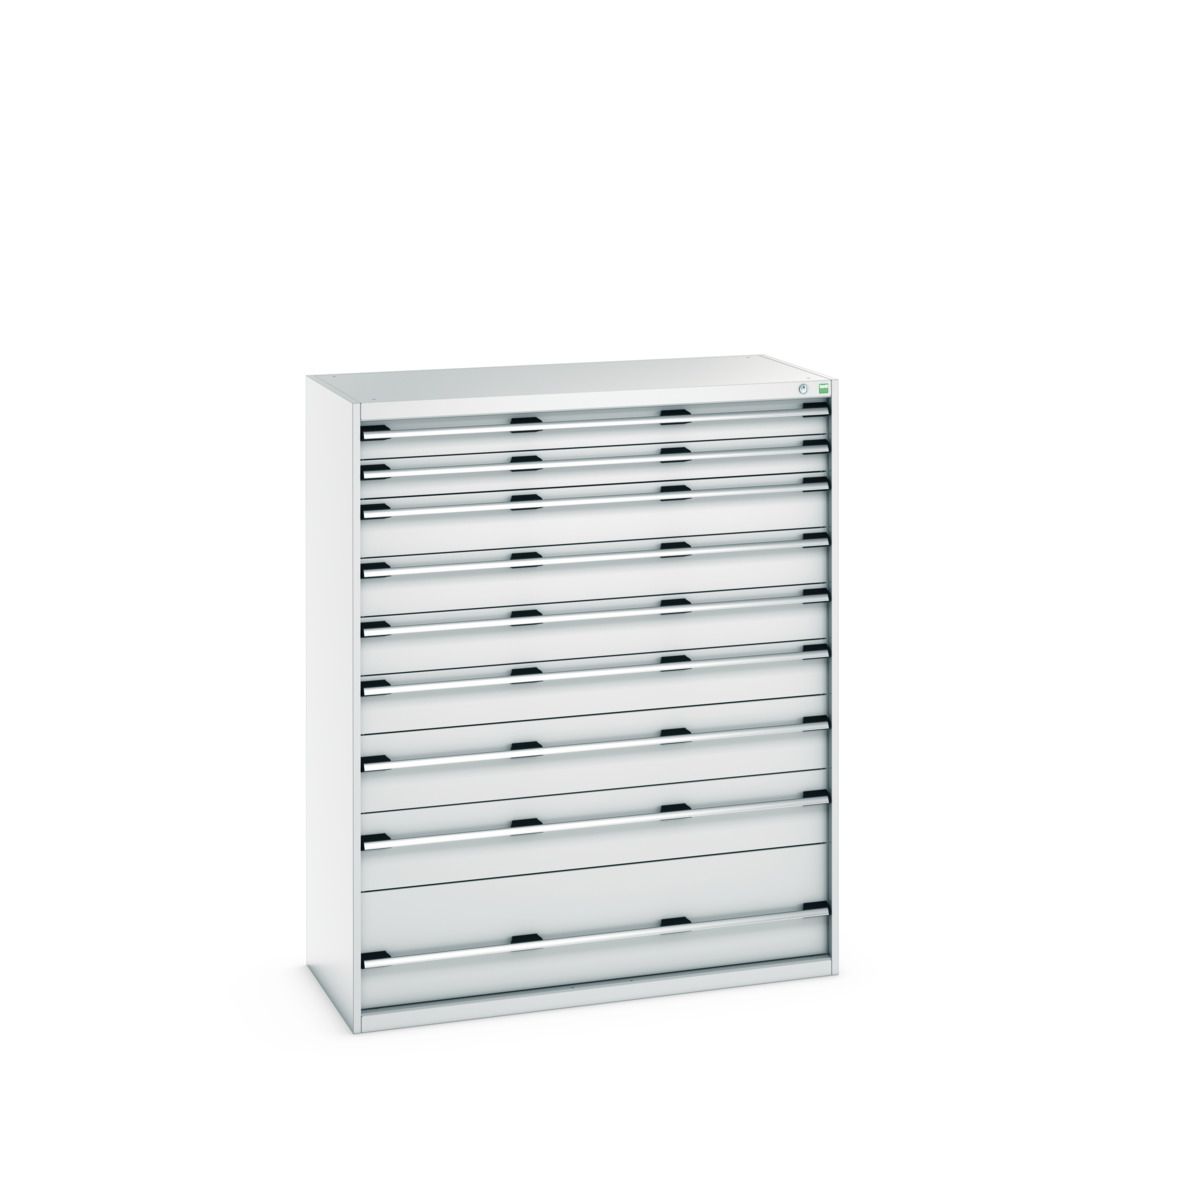 40022133.16V - cubio drawer cabinet